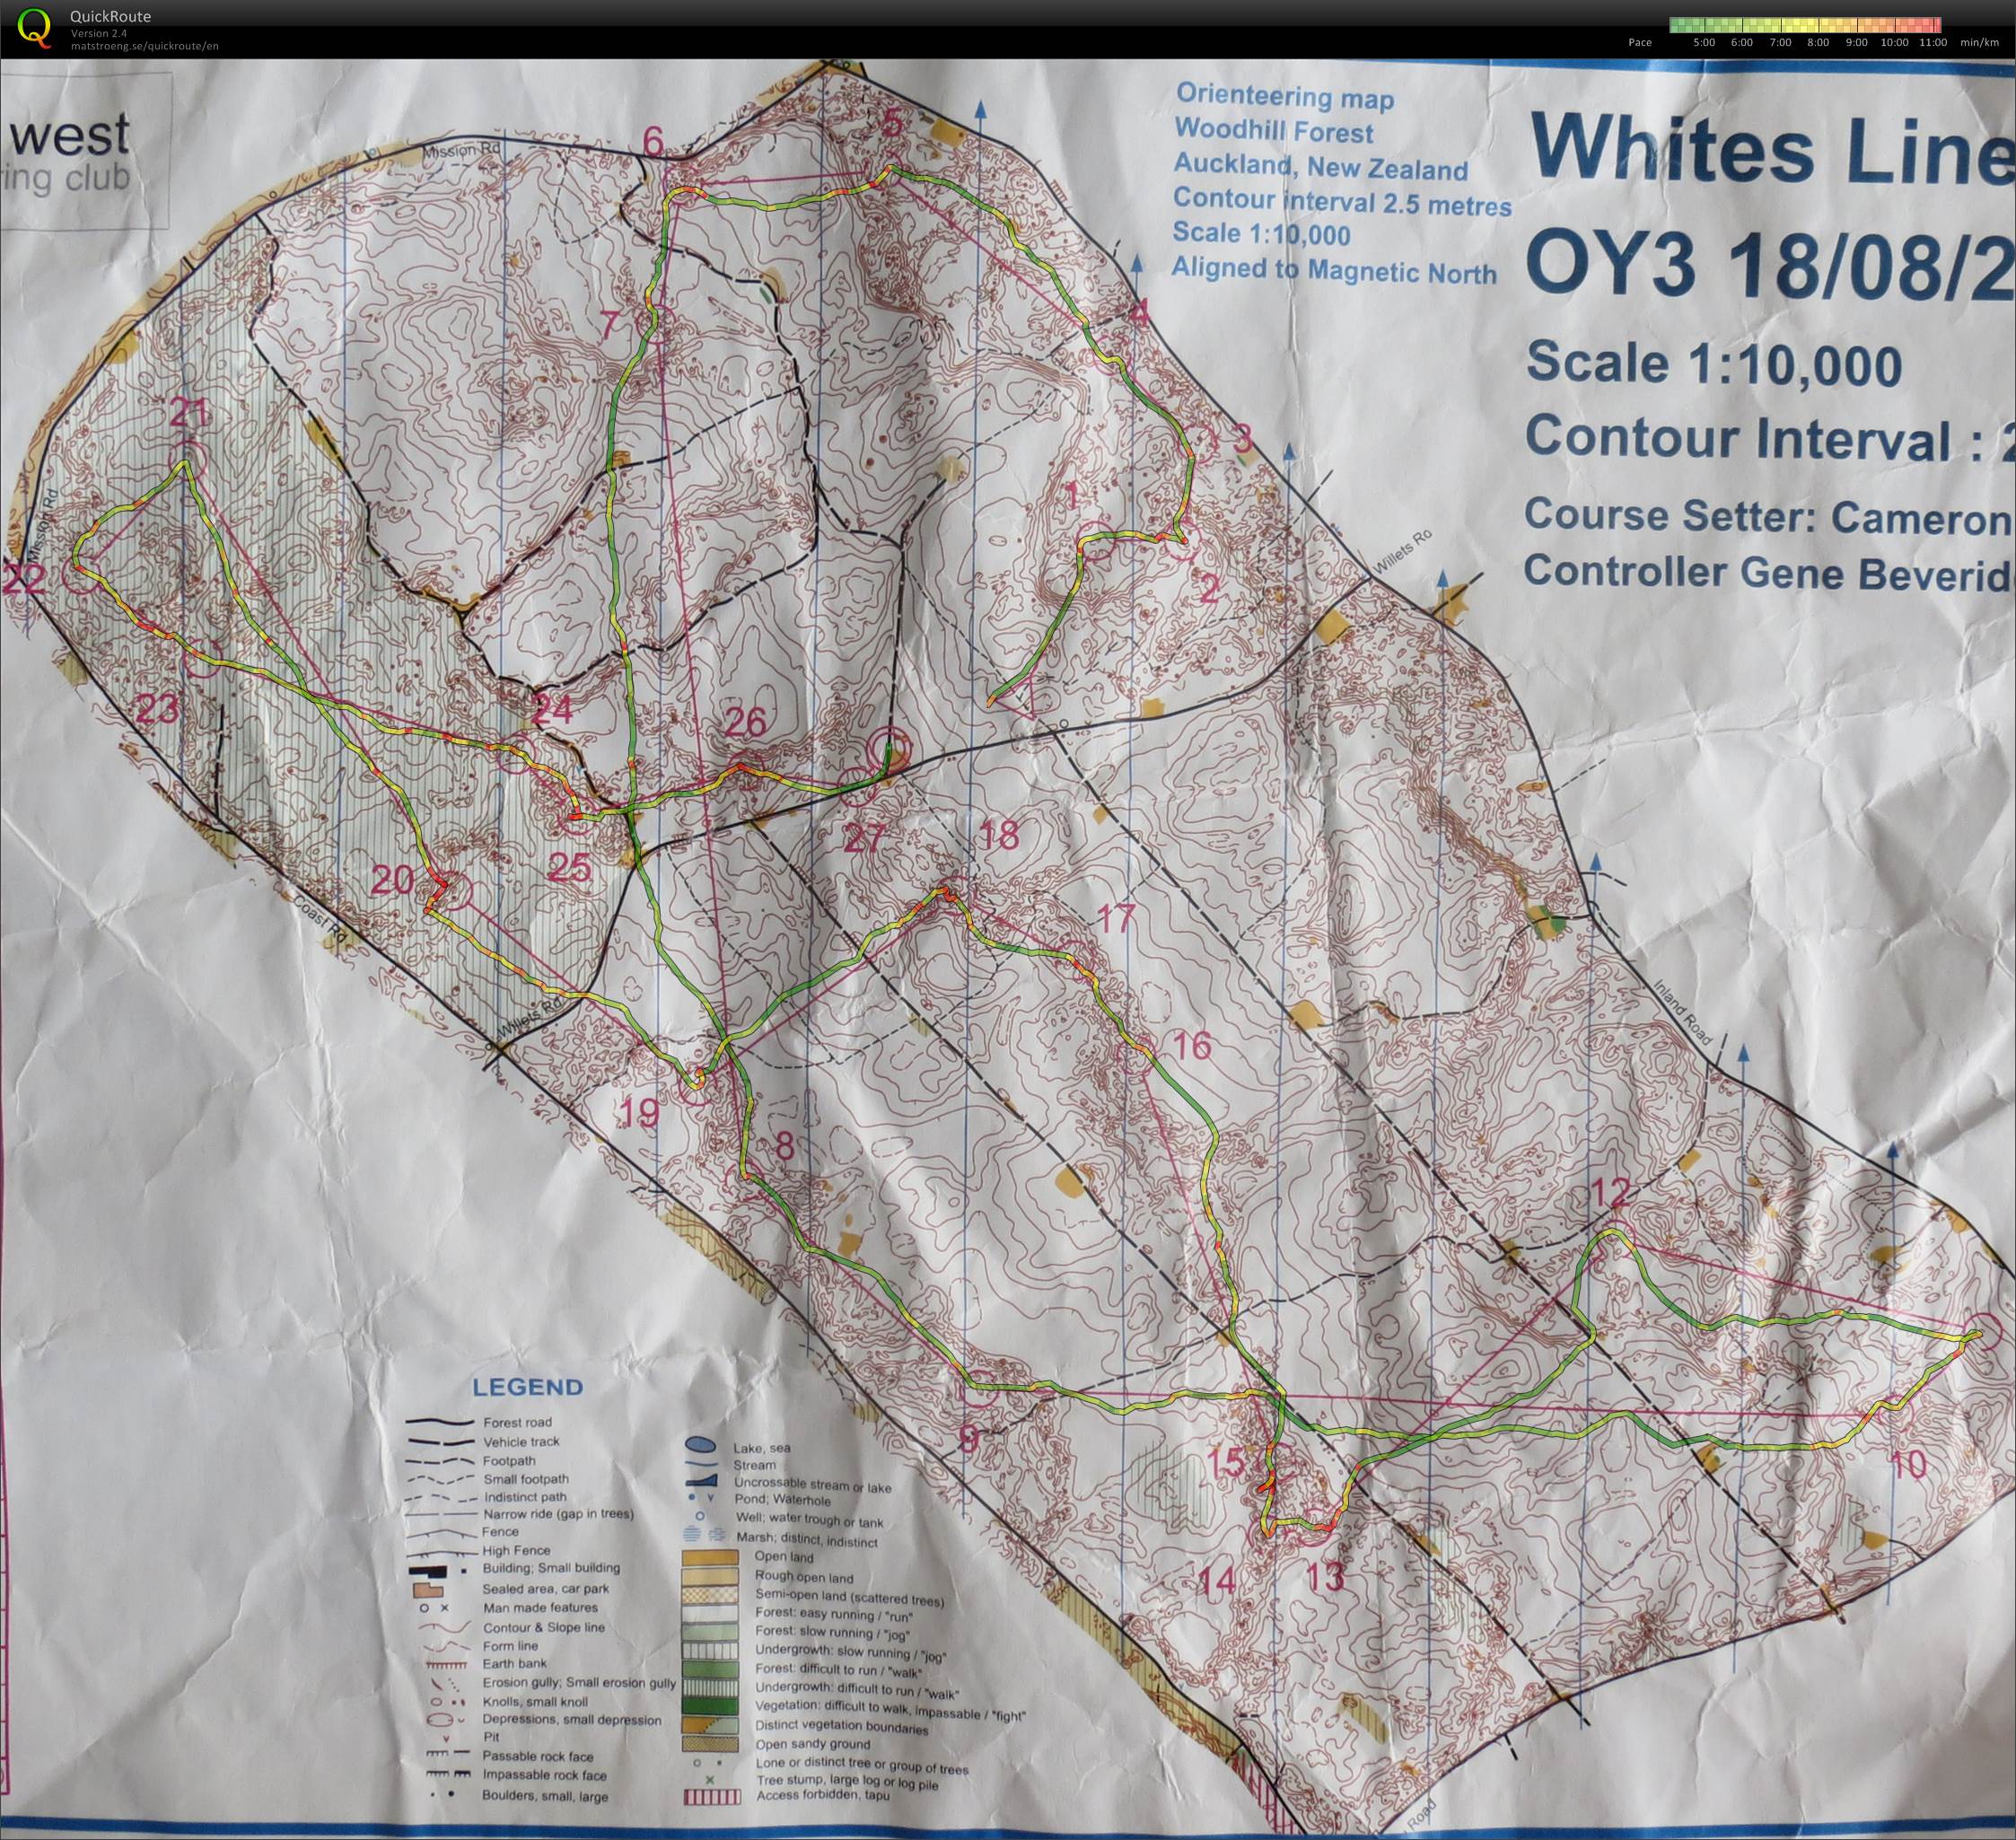 OY3 2013 Whites Line (2013-08-17)